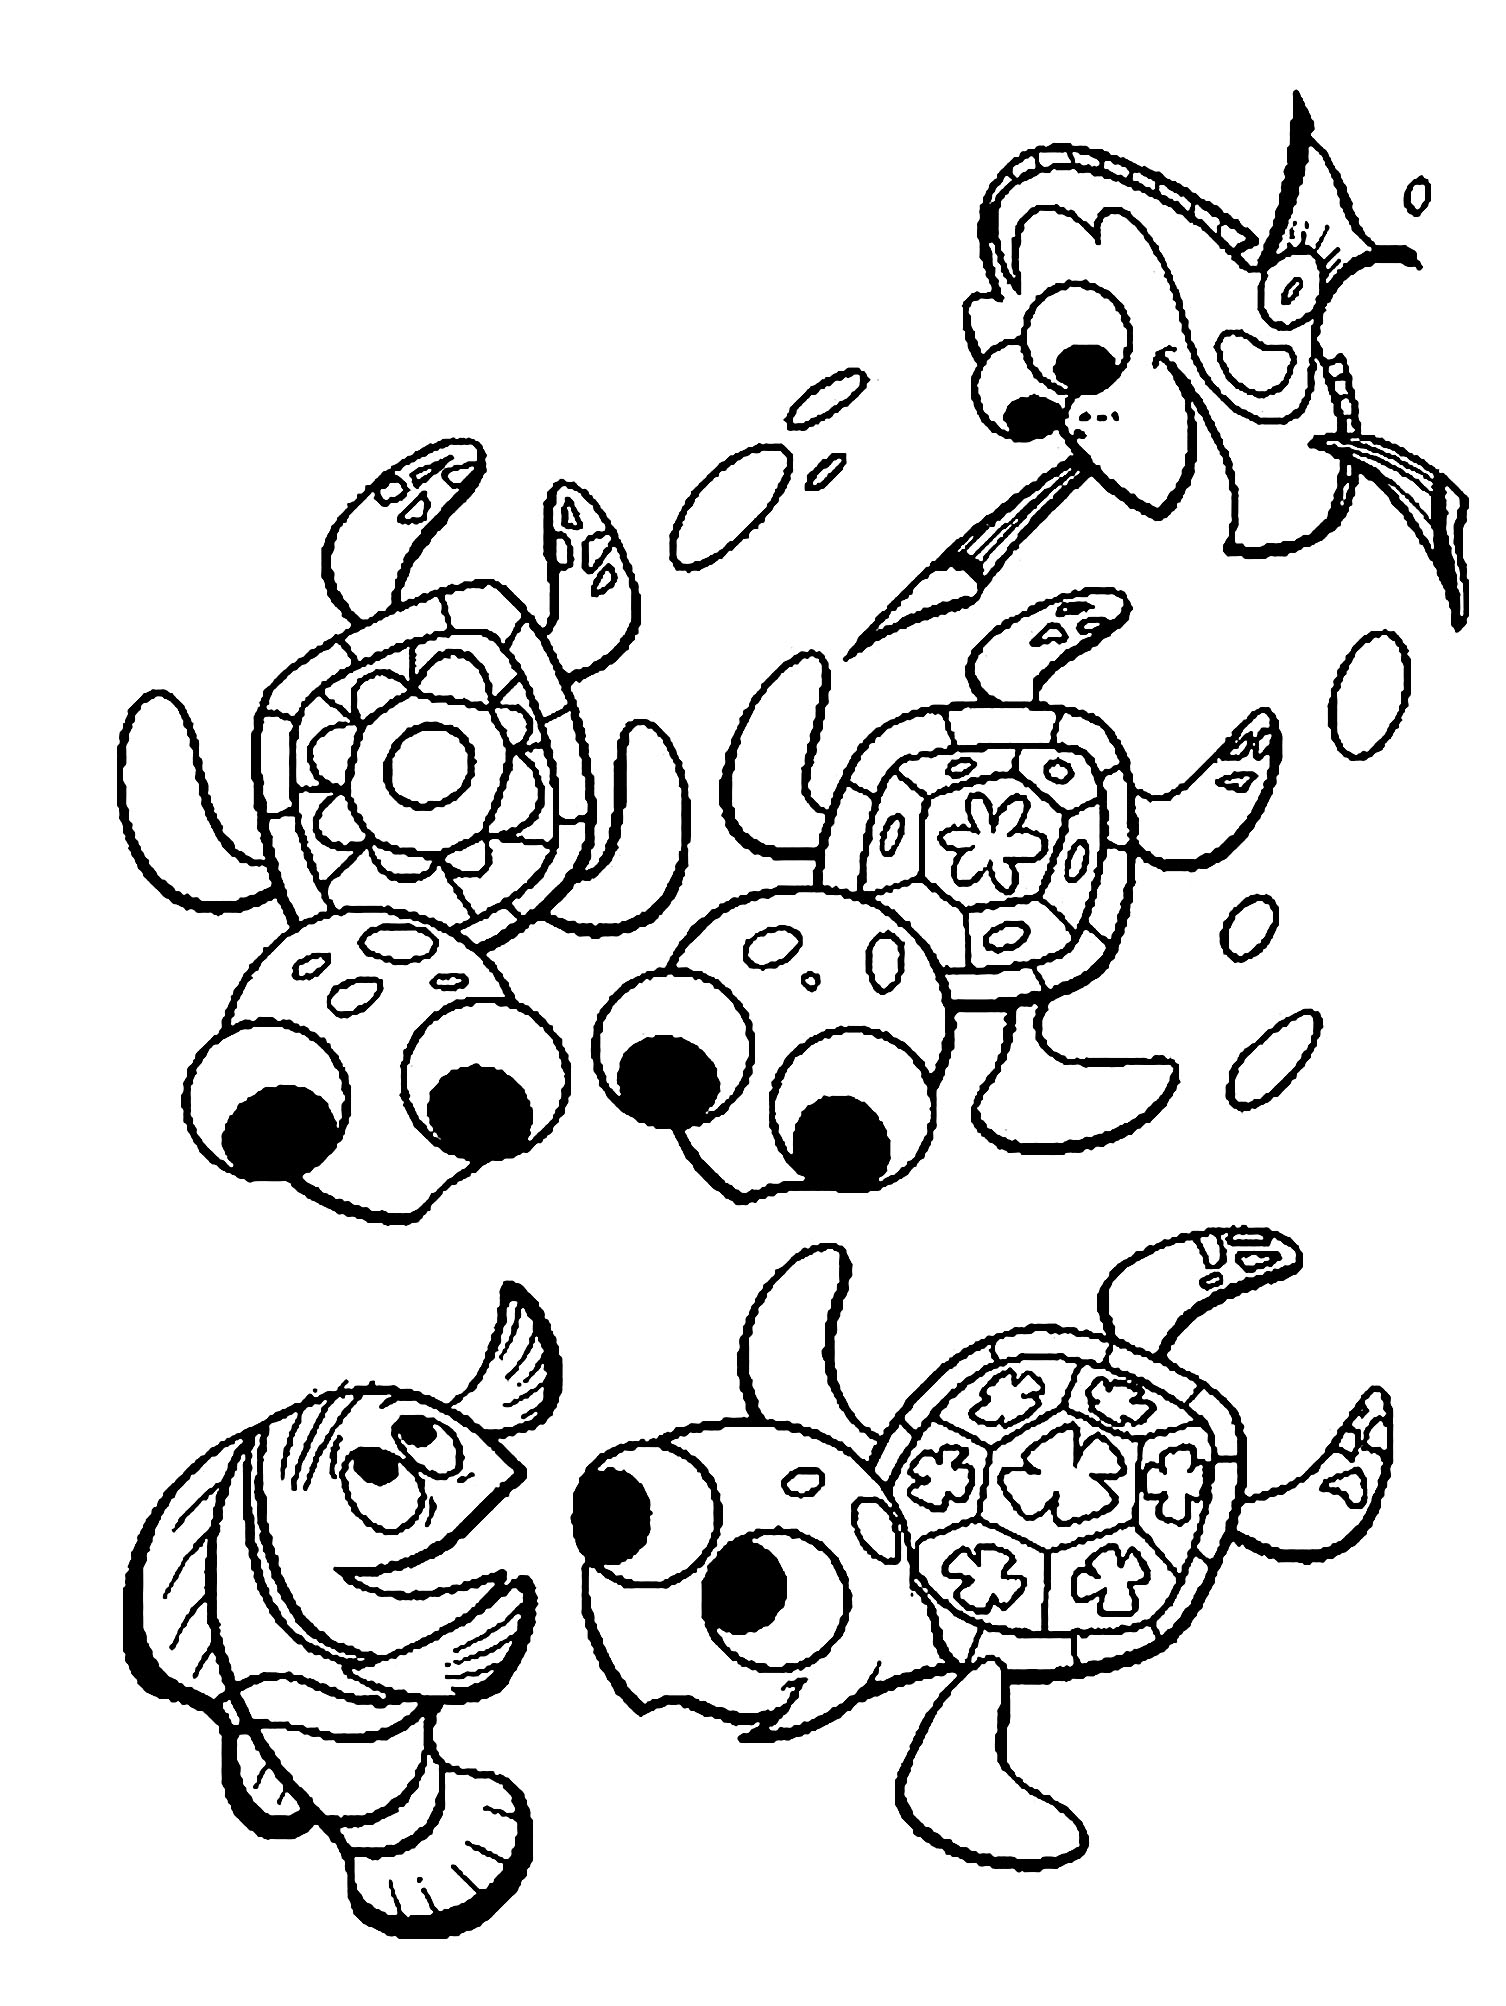 Desenho de tartarugas para colorir, fácil para crianças